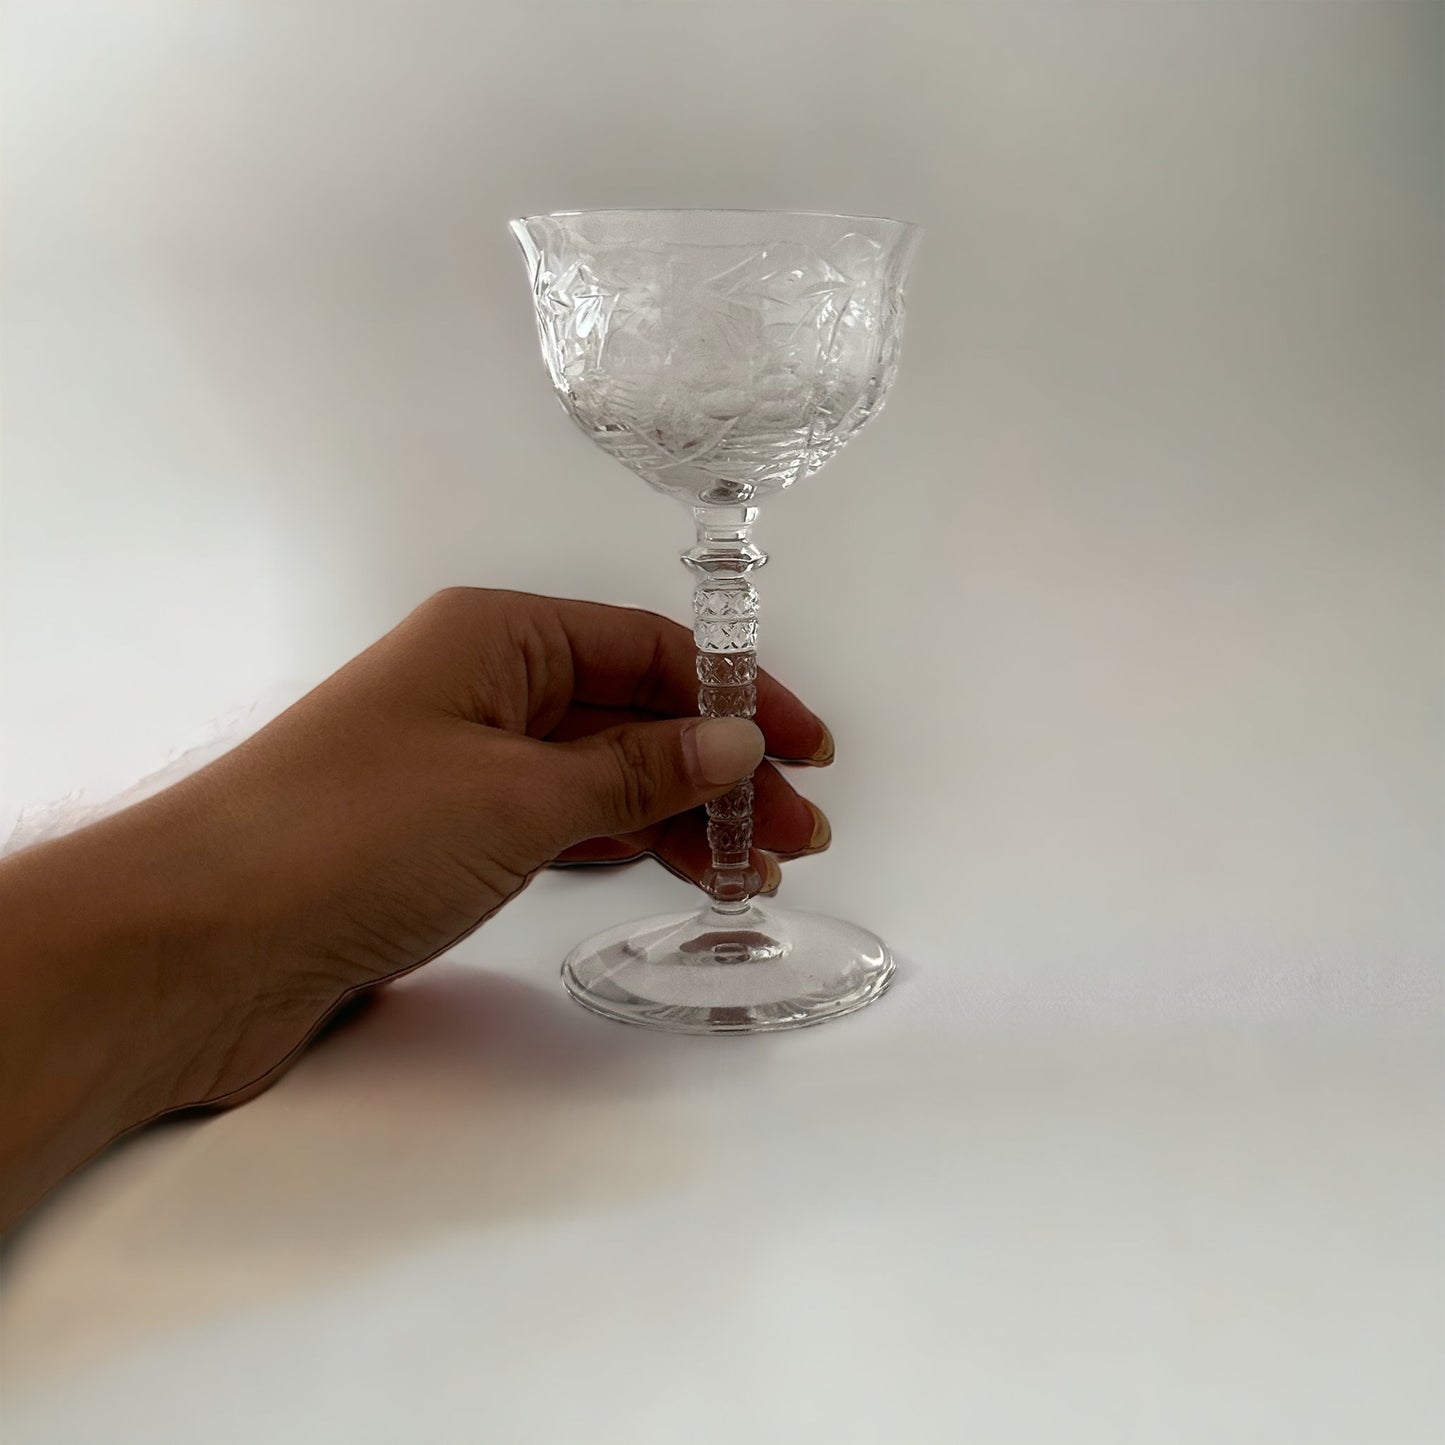 Vintage Cocktail Glasses